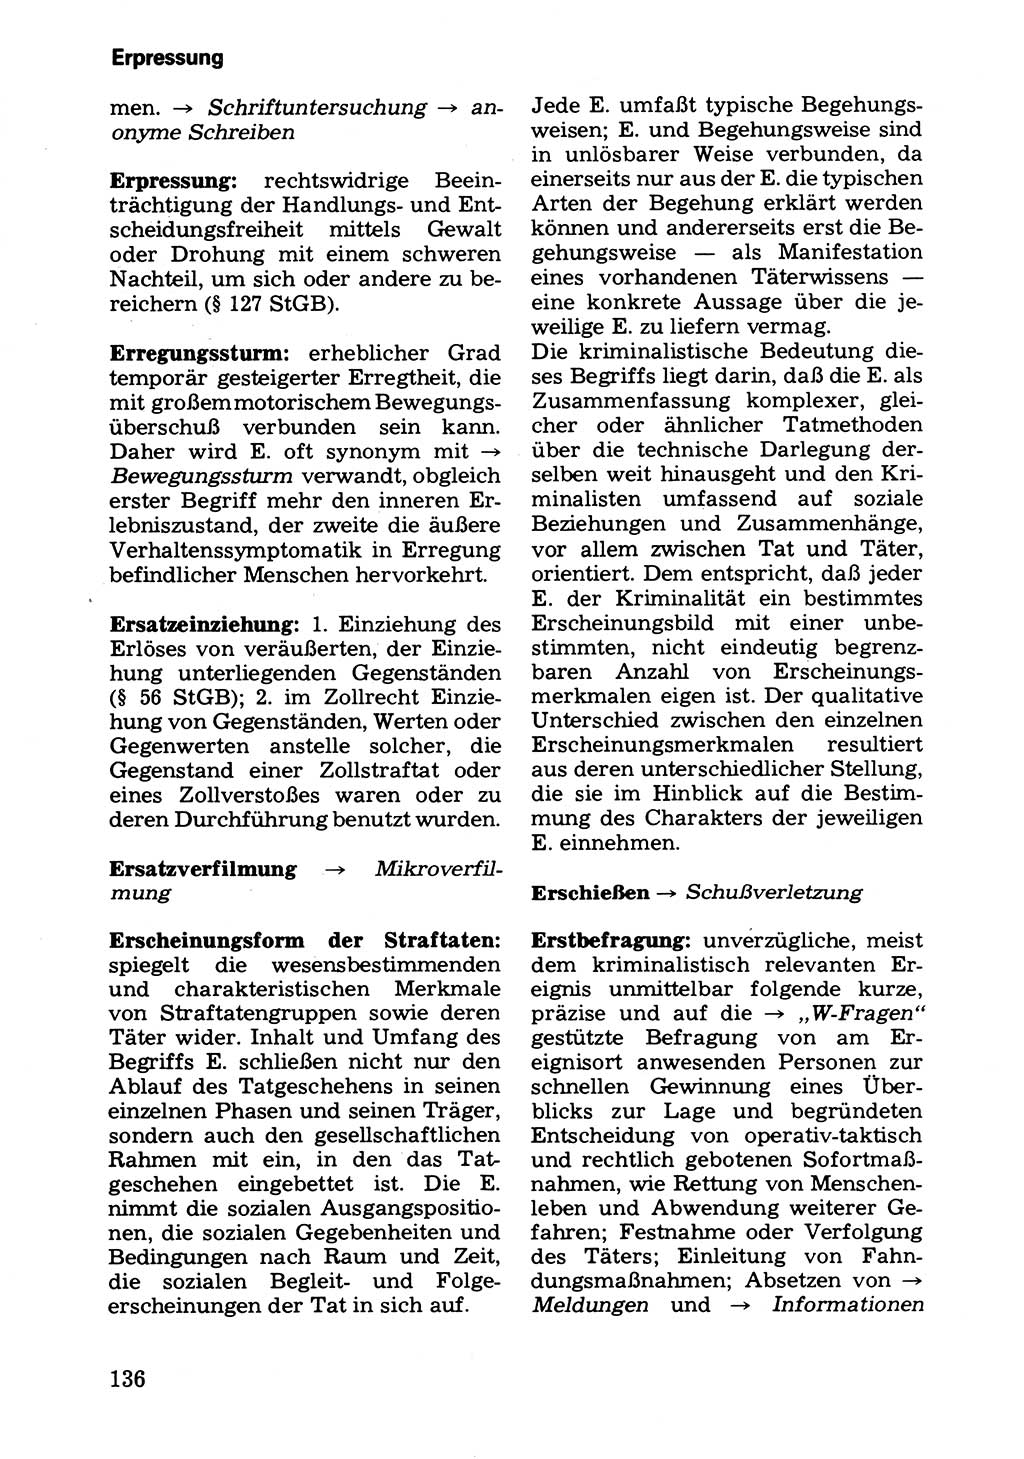 Wörterbuch der sozialistischen Kriminalistik [Deutsche Demokratische Republik (DDR)] 1981, Seite 136 (Wb. soz. Krim. DDR 1981, S. 136)